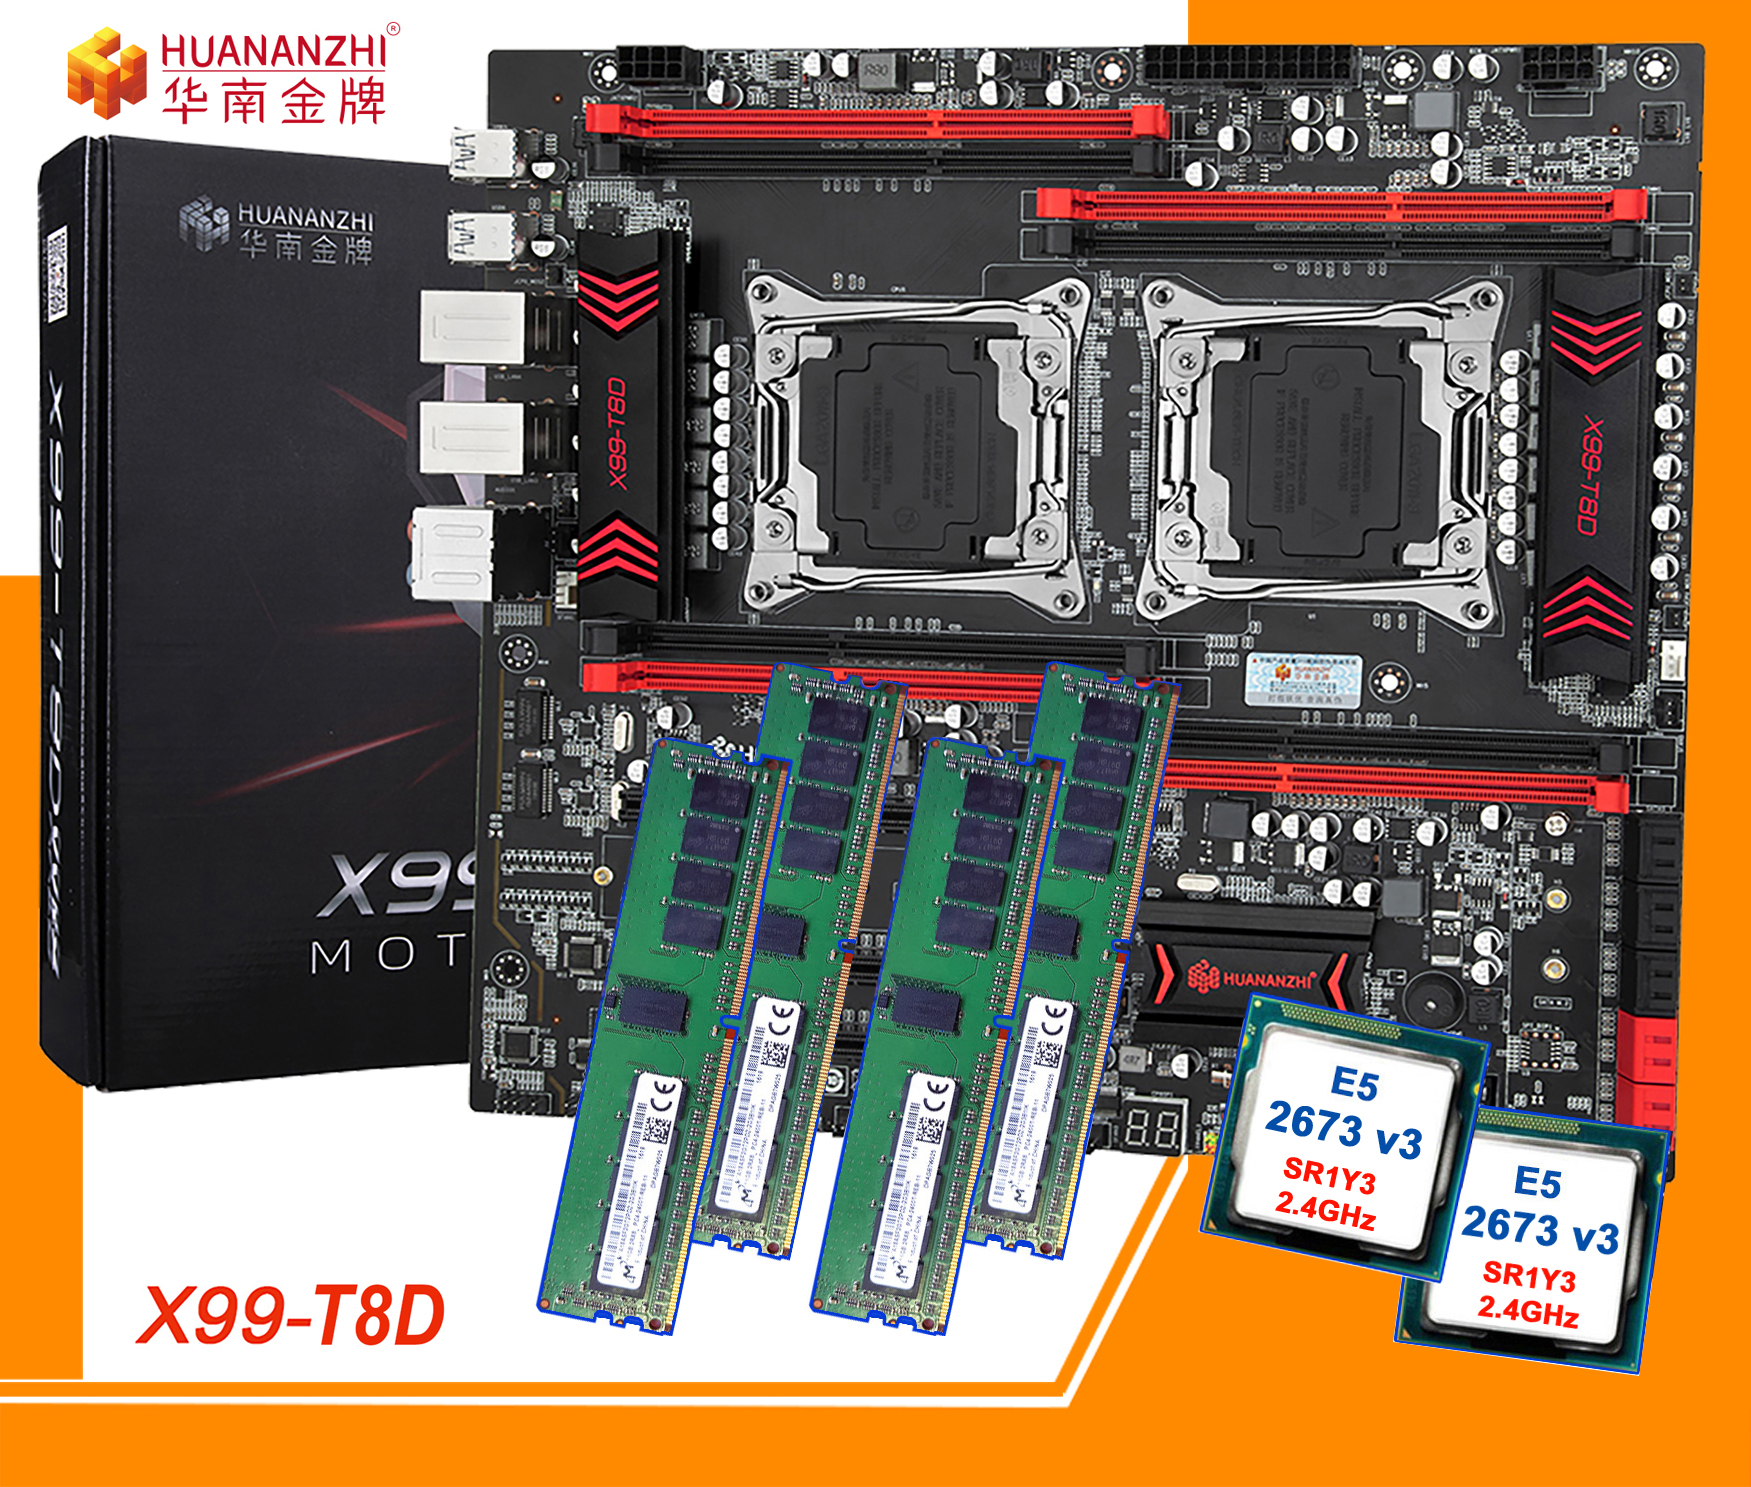 Combo Main Huananzhi X99-T8D + Dual Xeon E5 V3 + Ram DDR3 REG ECC. Chuyên GAME - ĐỒ HỌA - GIẢ LẬP - RENDER. BH: 12 tháng